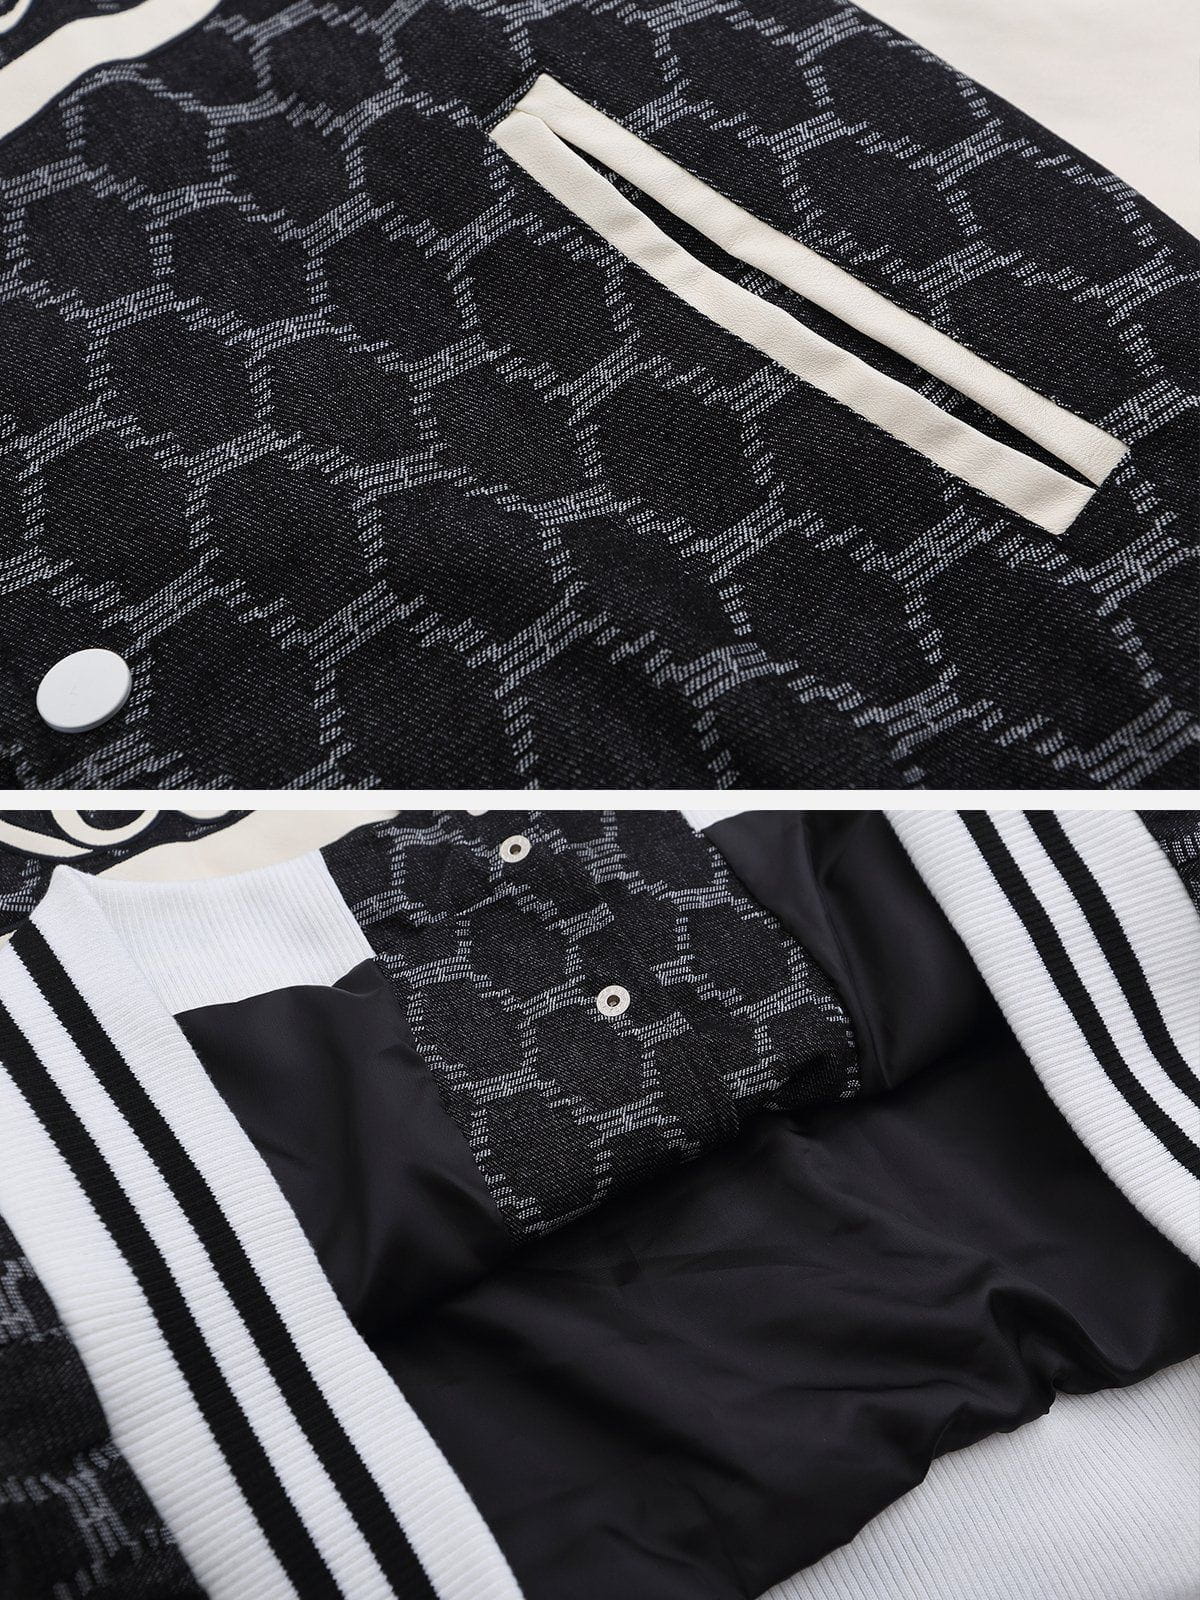 Eprezzy® - Letter Grid Patchwork Jacket Streetwear Fashion - eprezzy.com